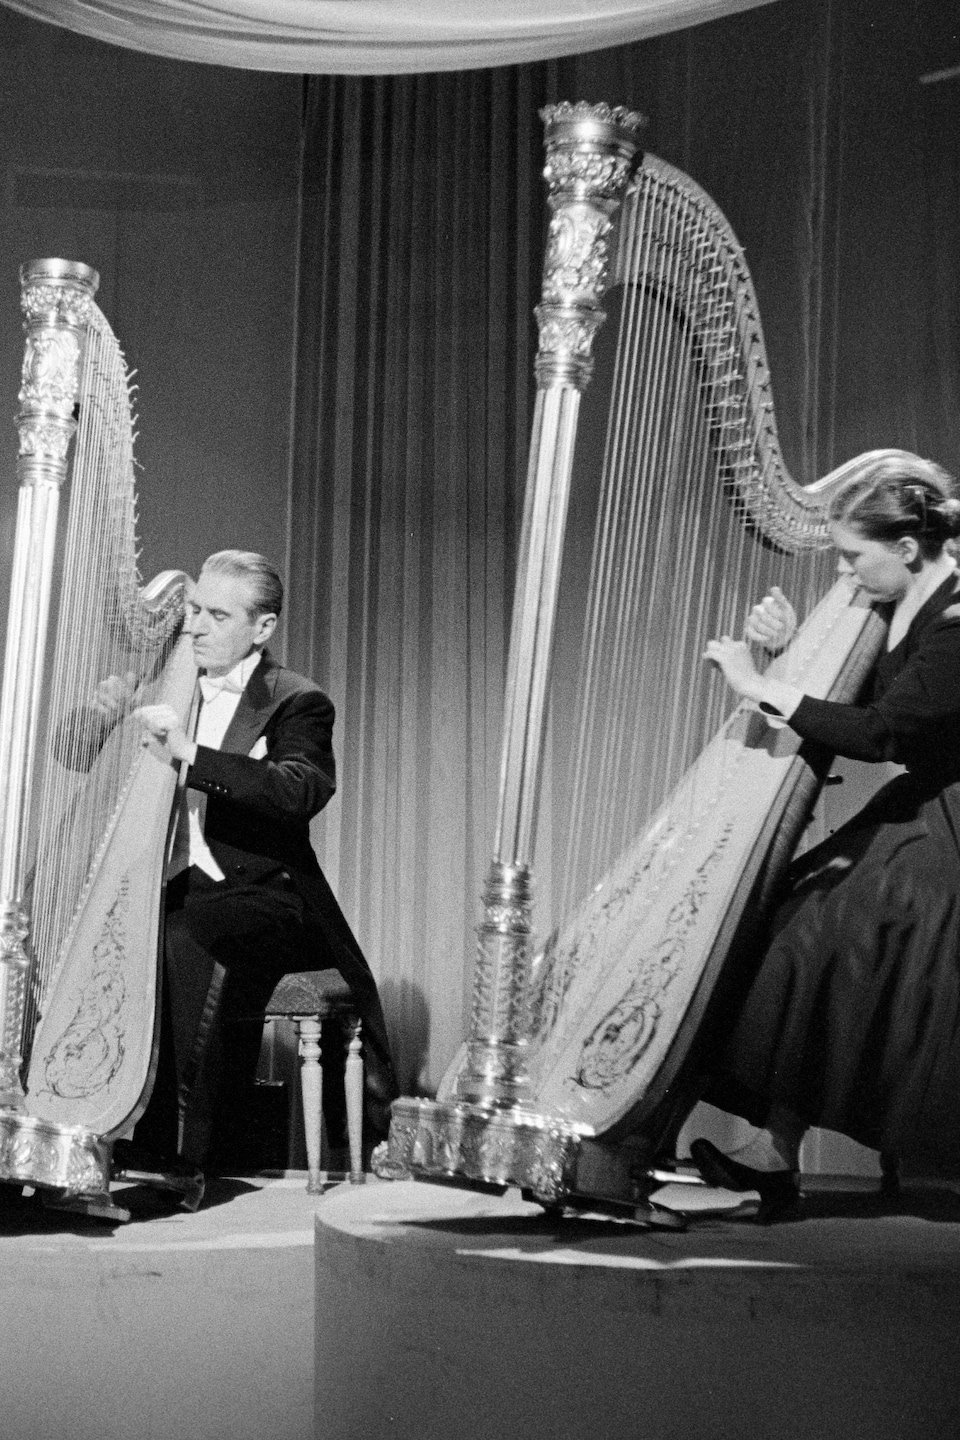 Dorothy Weldon, Marcel Grandjany et Marie Iösch assis, jouant de la harpe, chacun sur sa plateforme dans un studio de télévision décoré de voilages.